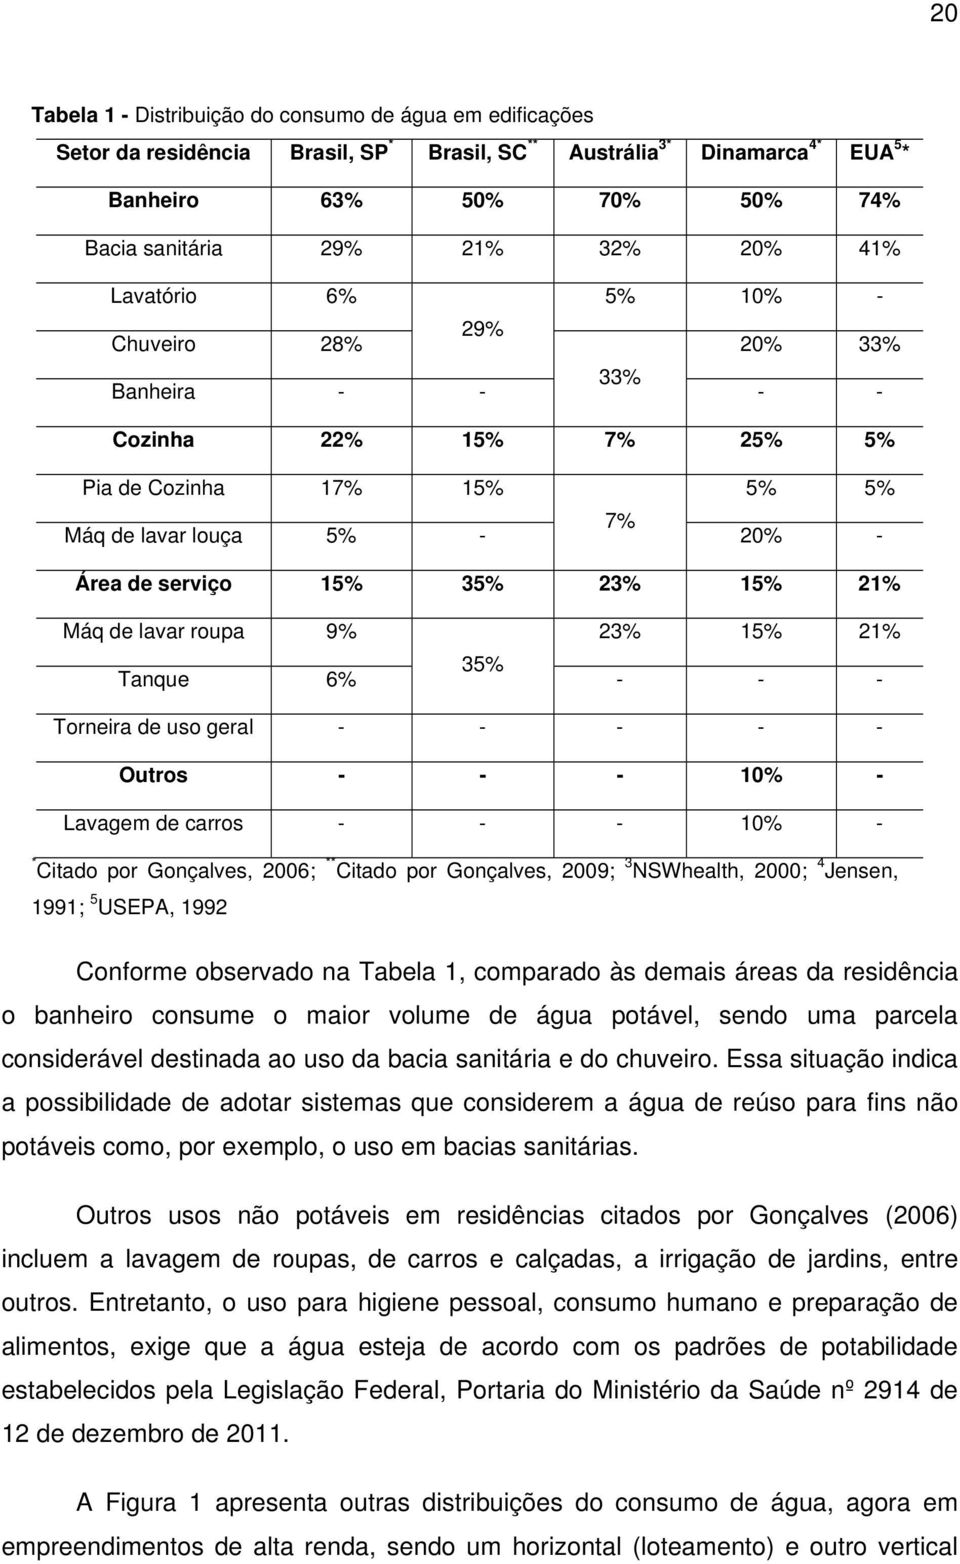 Máq de lavar roupa 9% 23% 15% 21% Tanque 6% 35% - - - Torneira de uso geral - - - - - Outros - - - 10% - Lavagem de carros - - - 10% - * Citado por Gonçalves, 2006; ** Citado por Gonçalves, 2009; 3